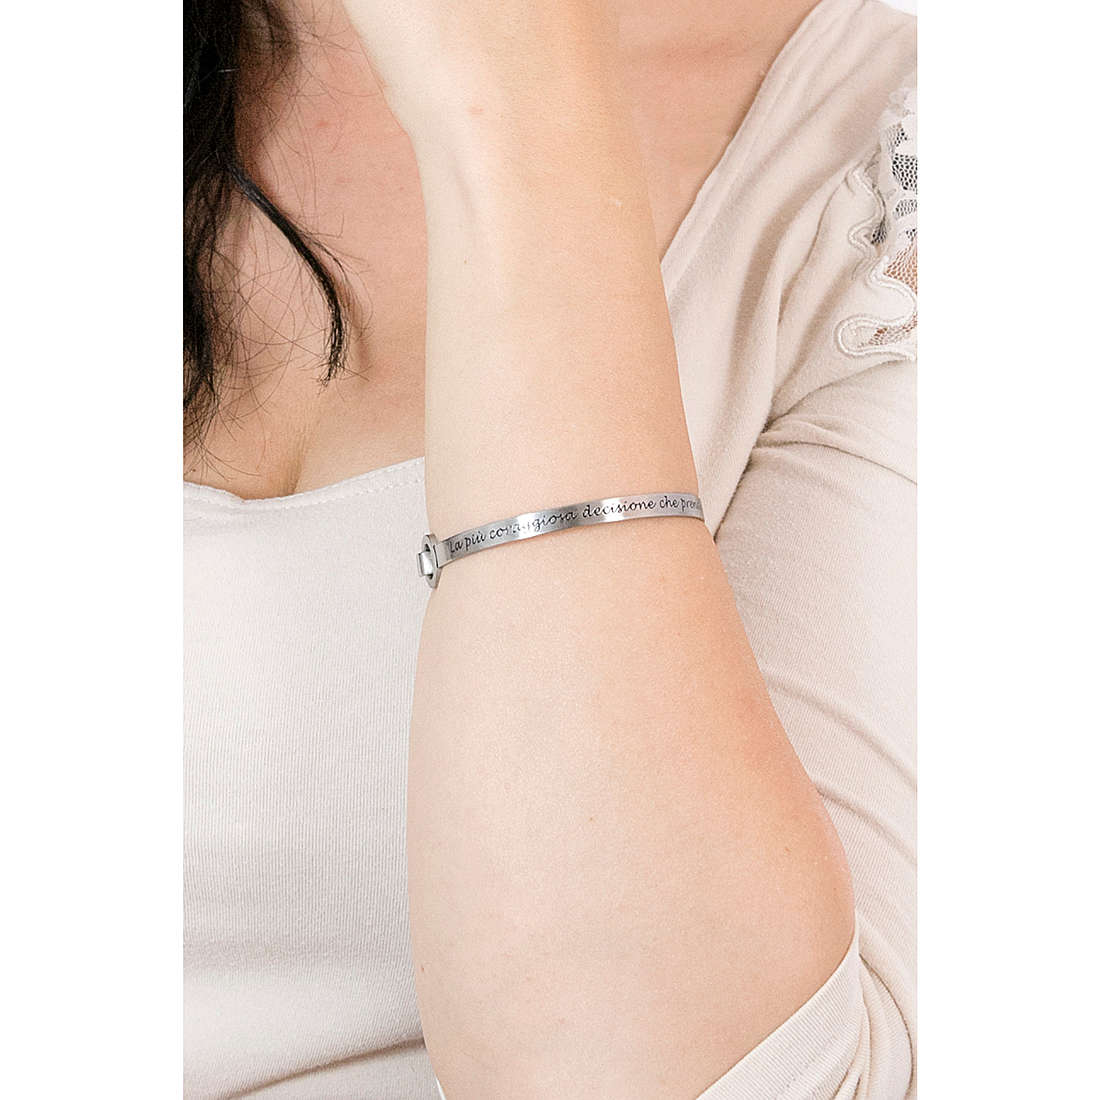 Kidult bracelets Philosophy woman 731502 wearing